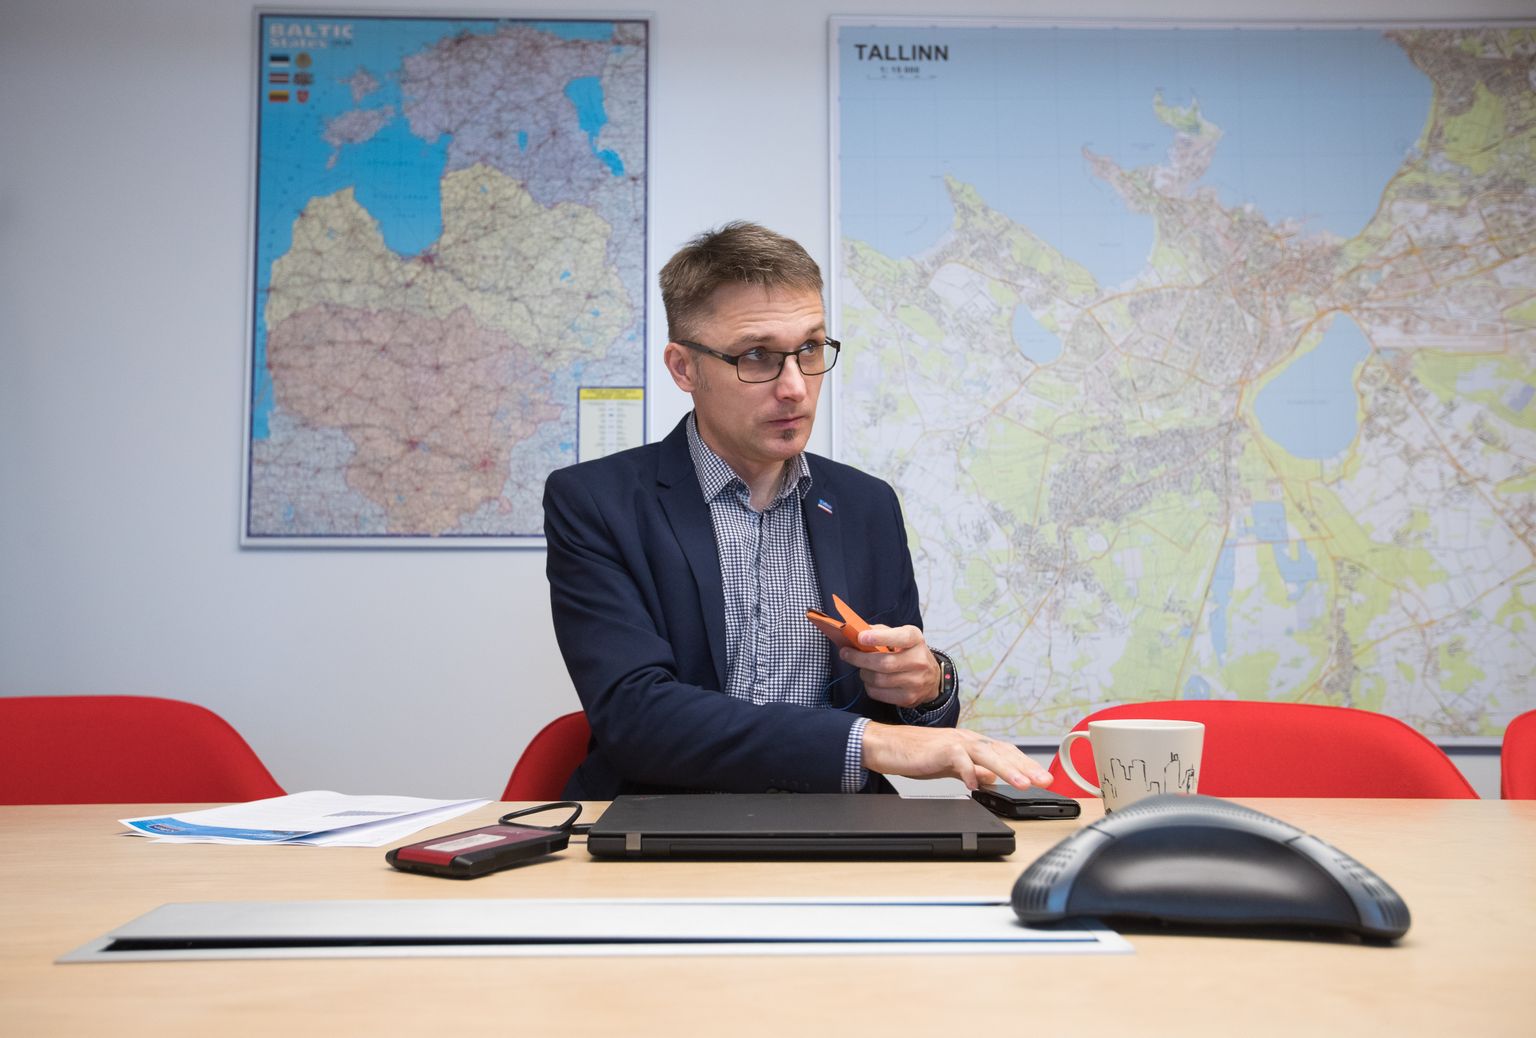 Colliers Internationali Eesti partneri Margus Tinno sõnul hakkab konkurentsi tihenemisega kaubanduskeskuste omanike lihtne elu läbi saama.